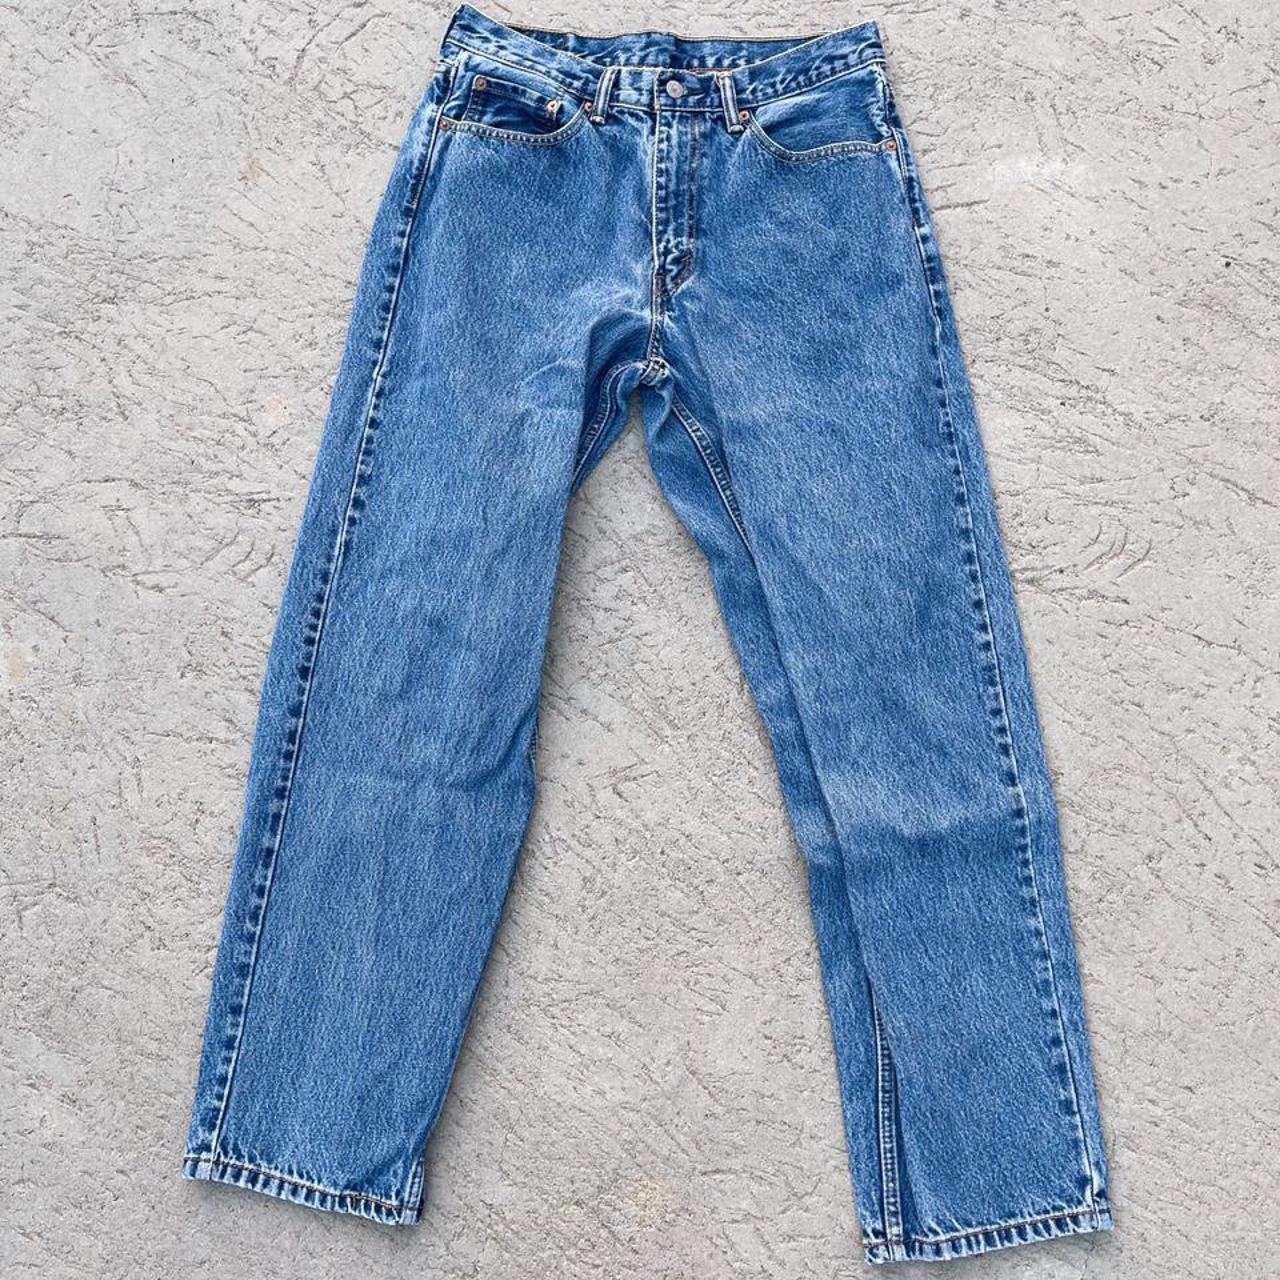 Regular Blue Levi’s 560 Denim Jeans. Made in... - Depop